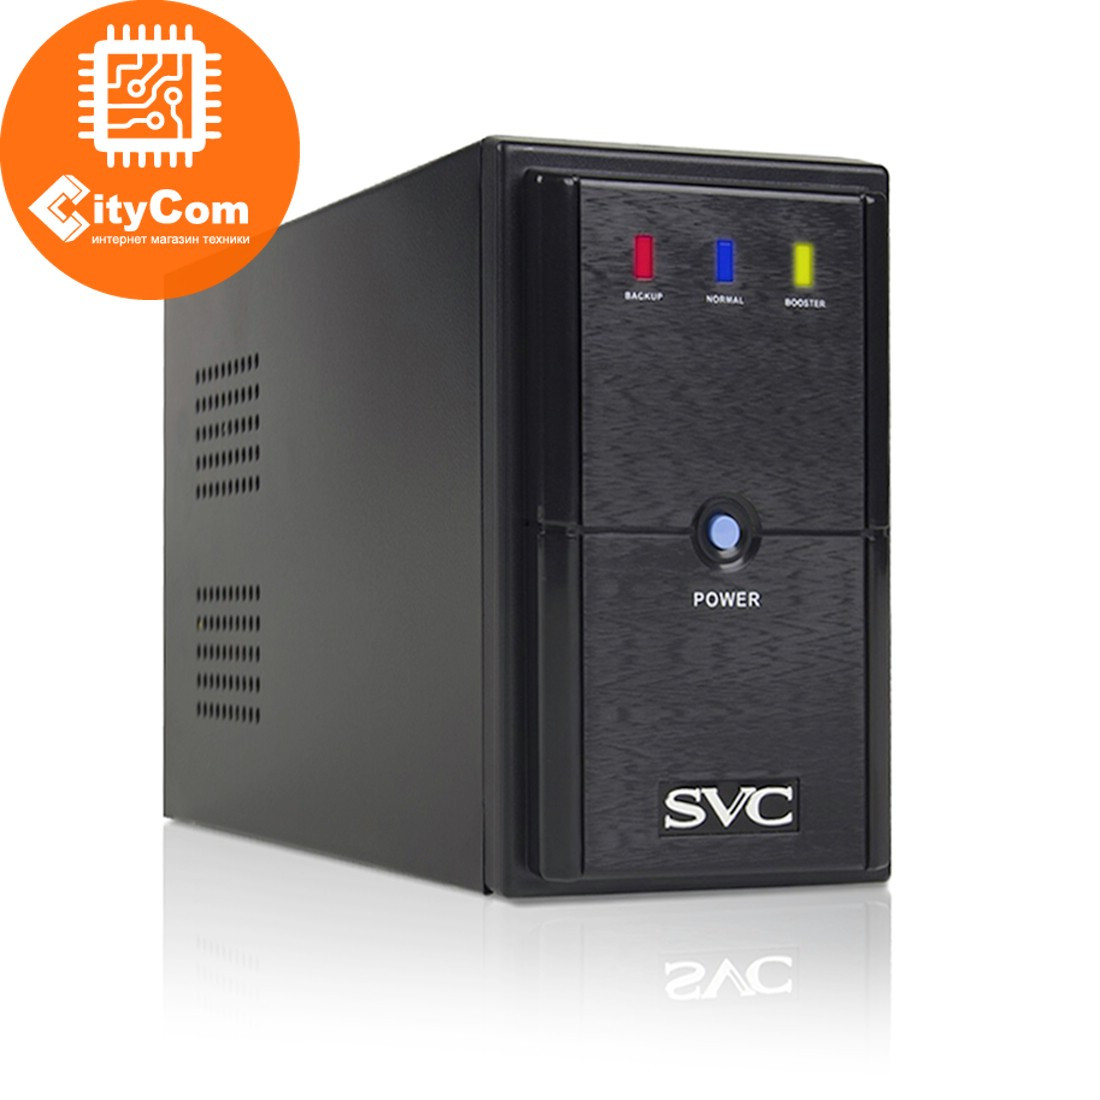 Источник Бесперебойного питания UPS SVC V-600-L, USB, 600VA, 360Вт, AVR стабилизатор ИБП Арт.4892